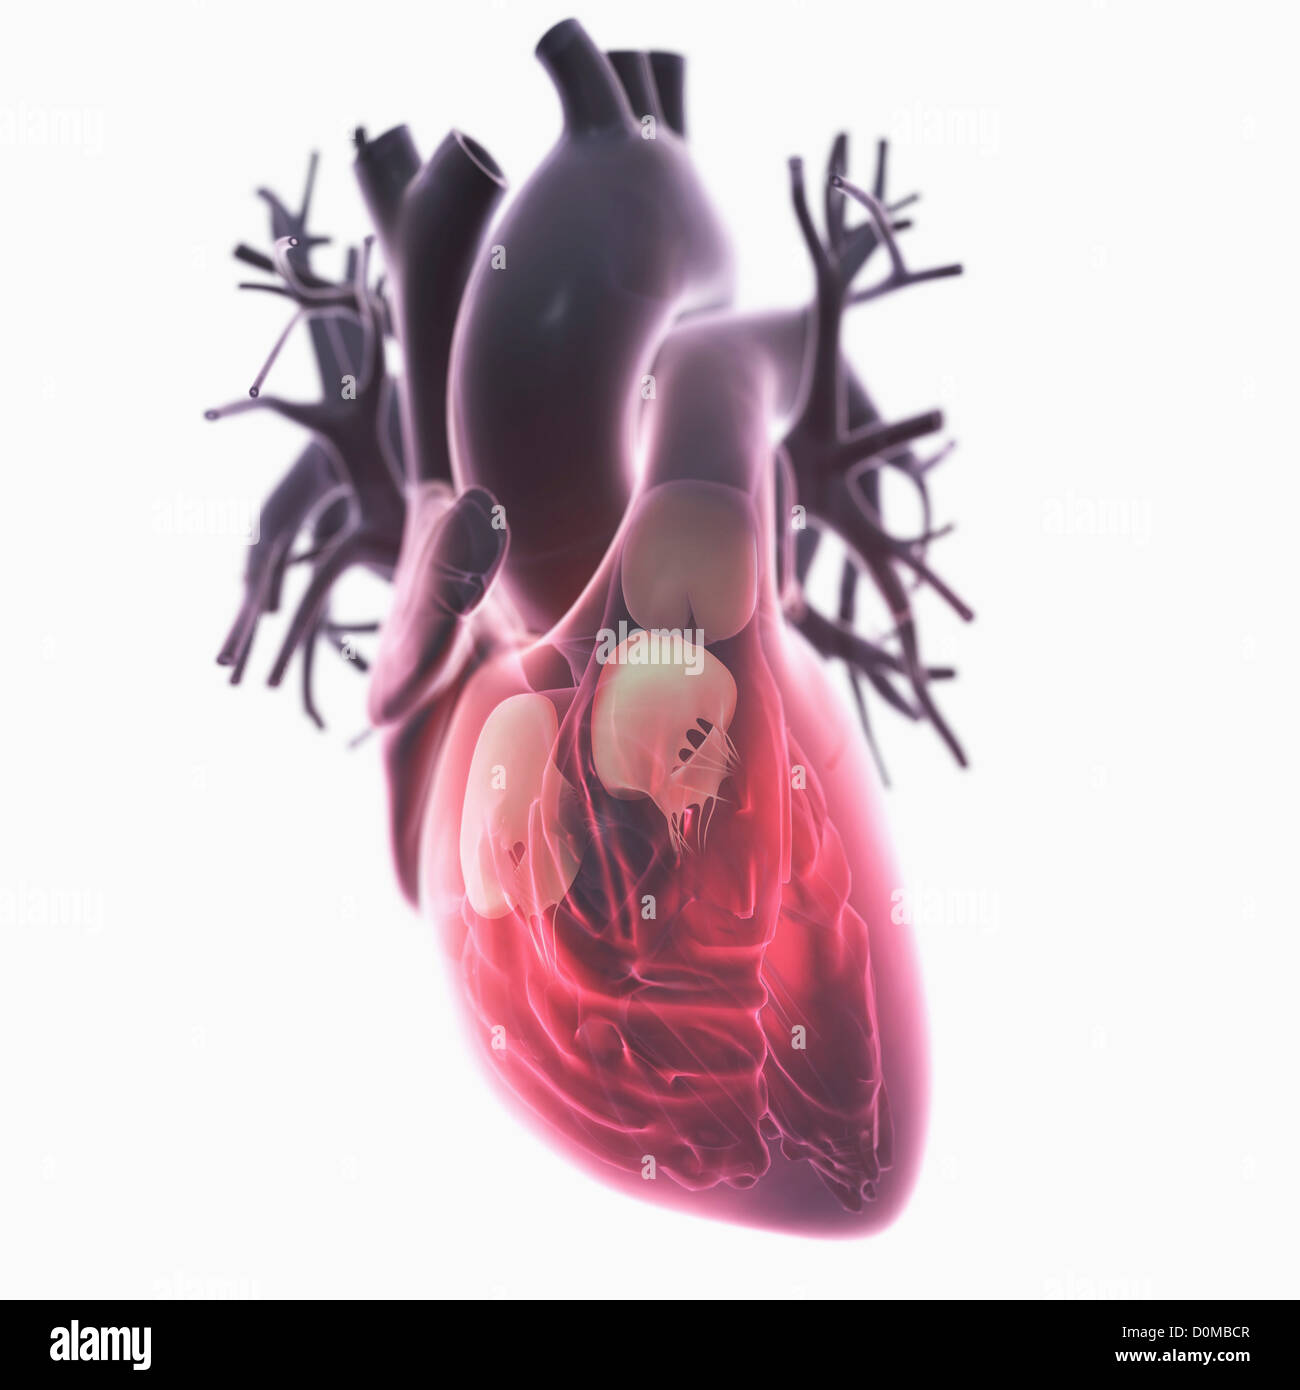 Diagramm eines Herzens, zeigt die Ventile. Stockfoto